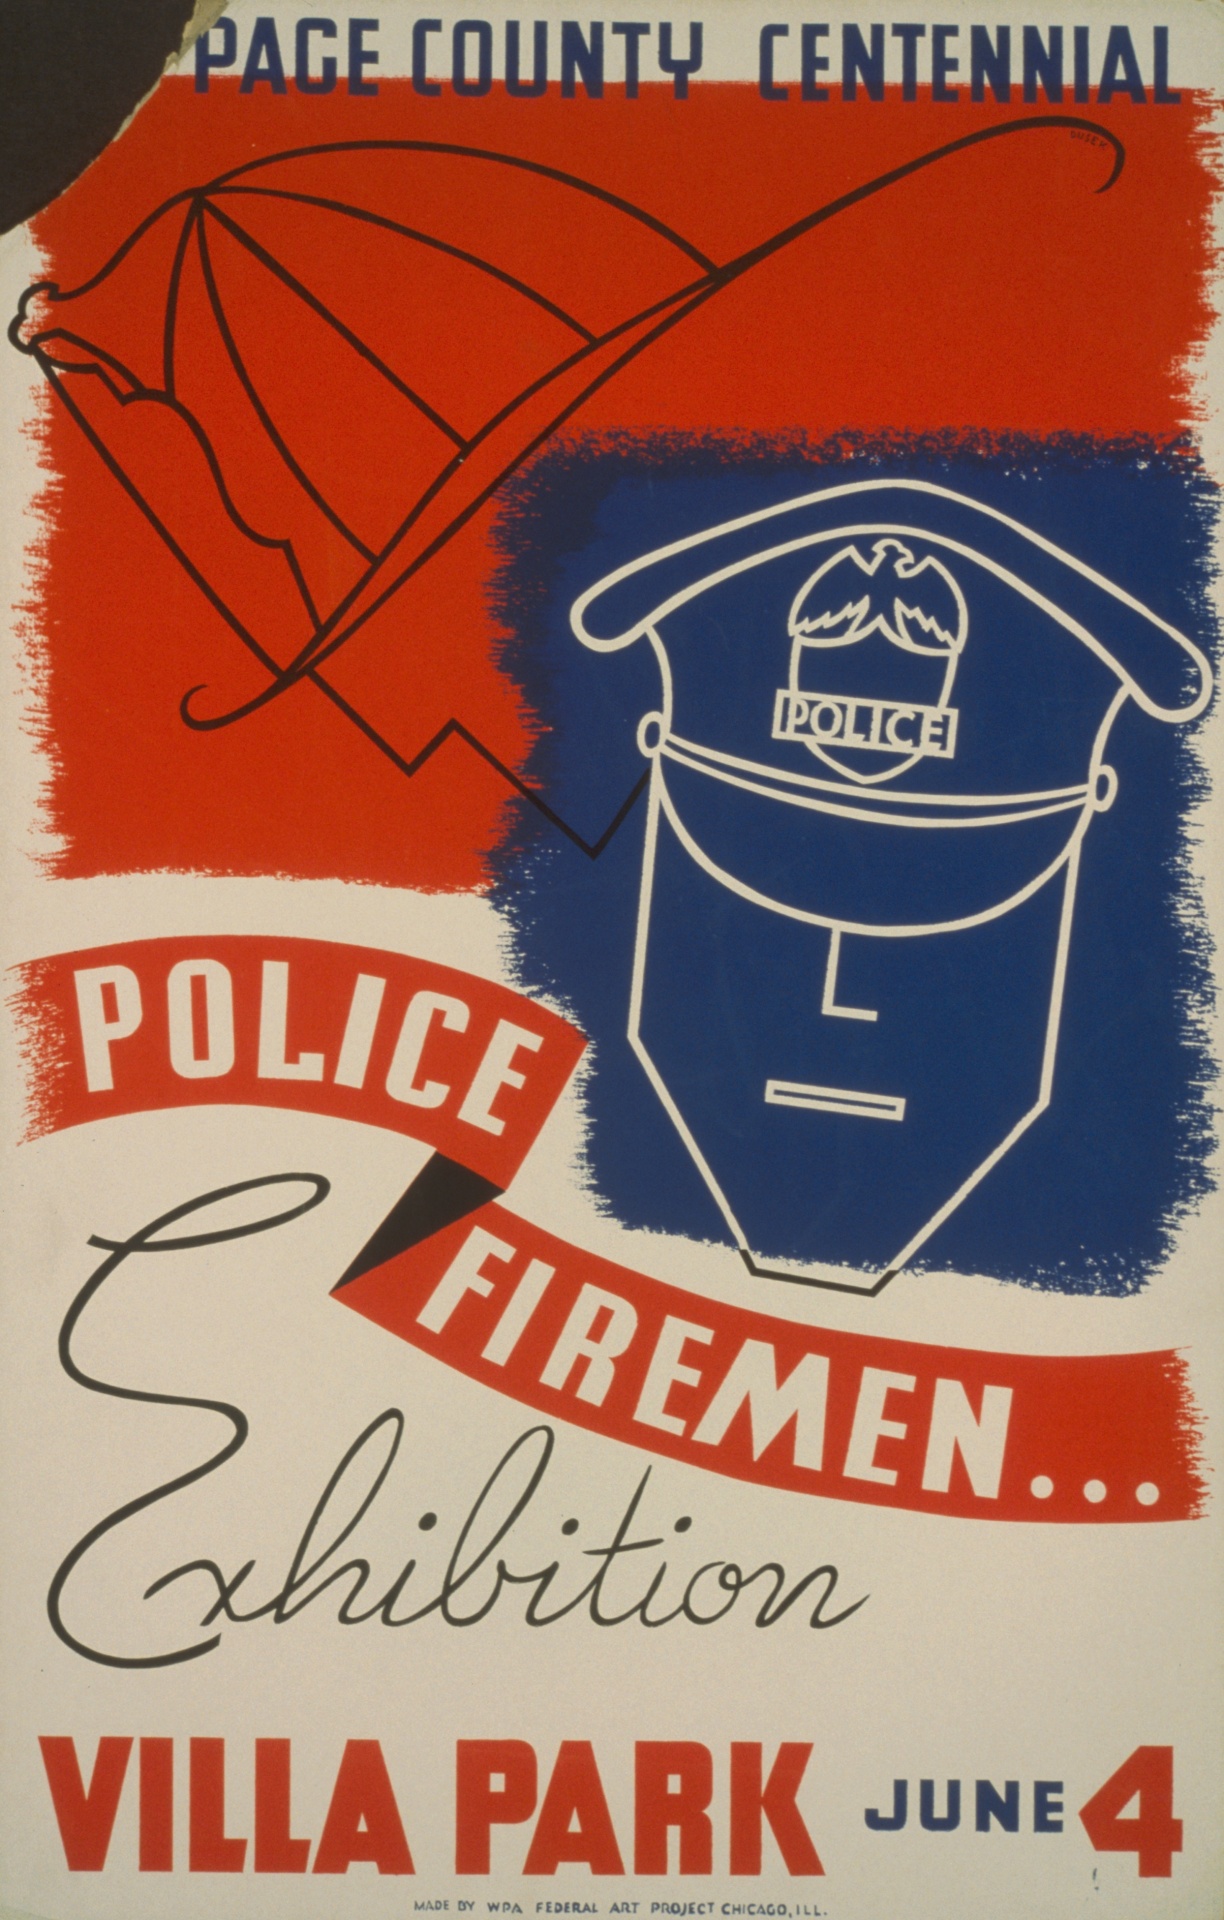 Vintage Police Poster